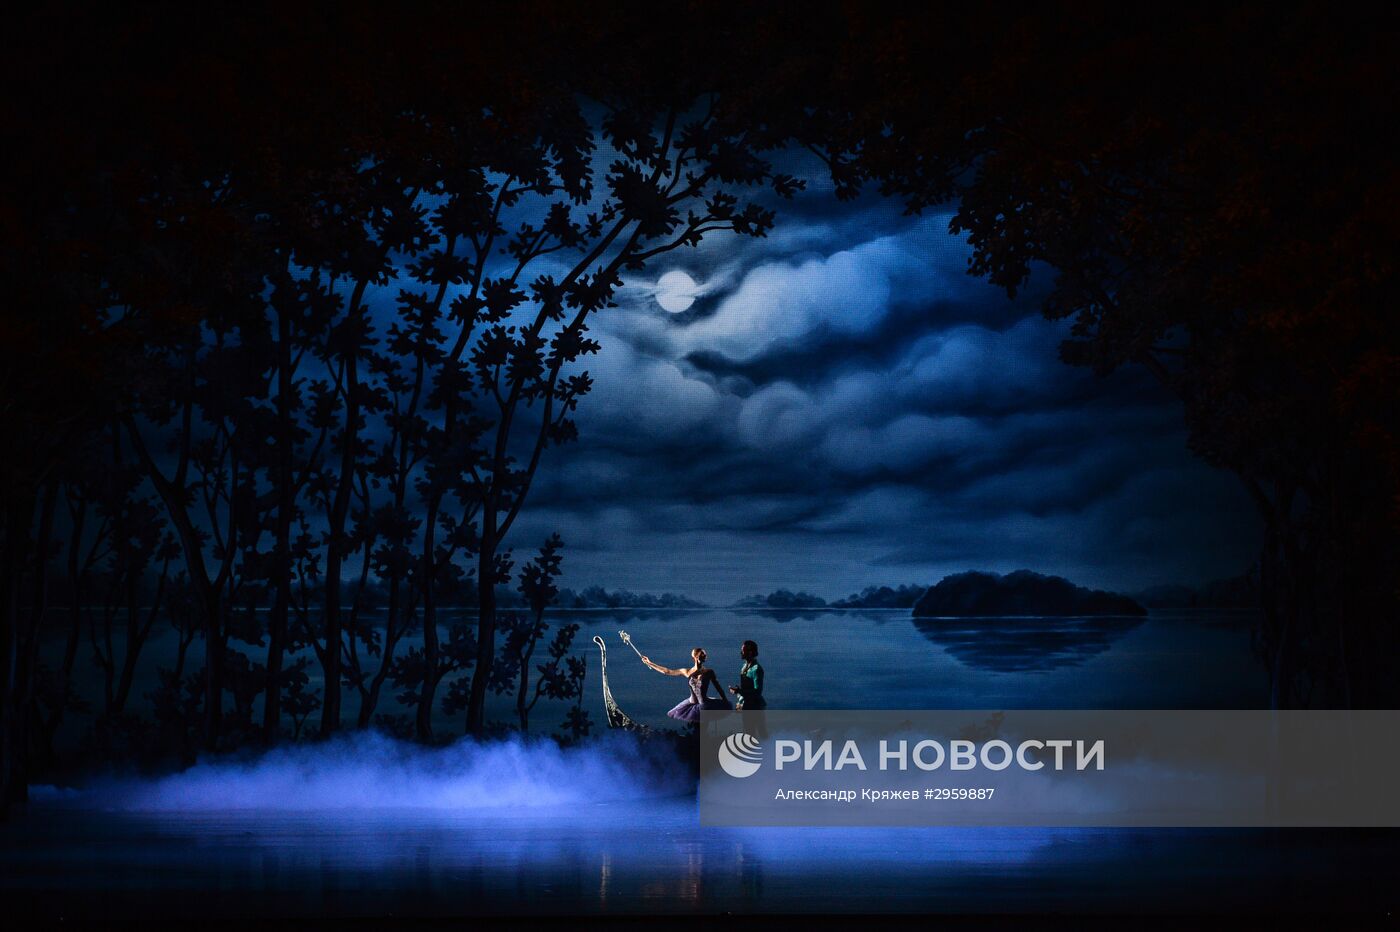 Балет "Спящая красавица" в Новосибирском академическом театре оперы и балета